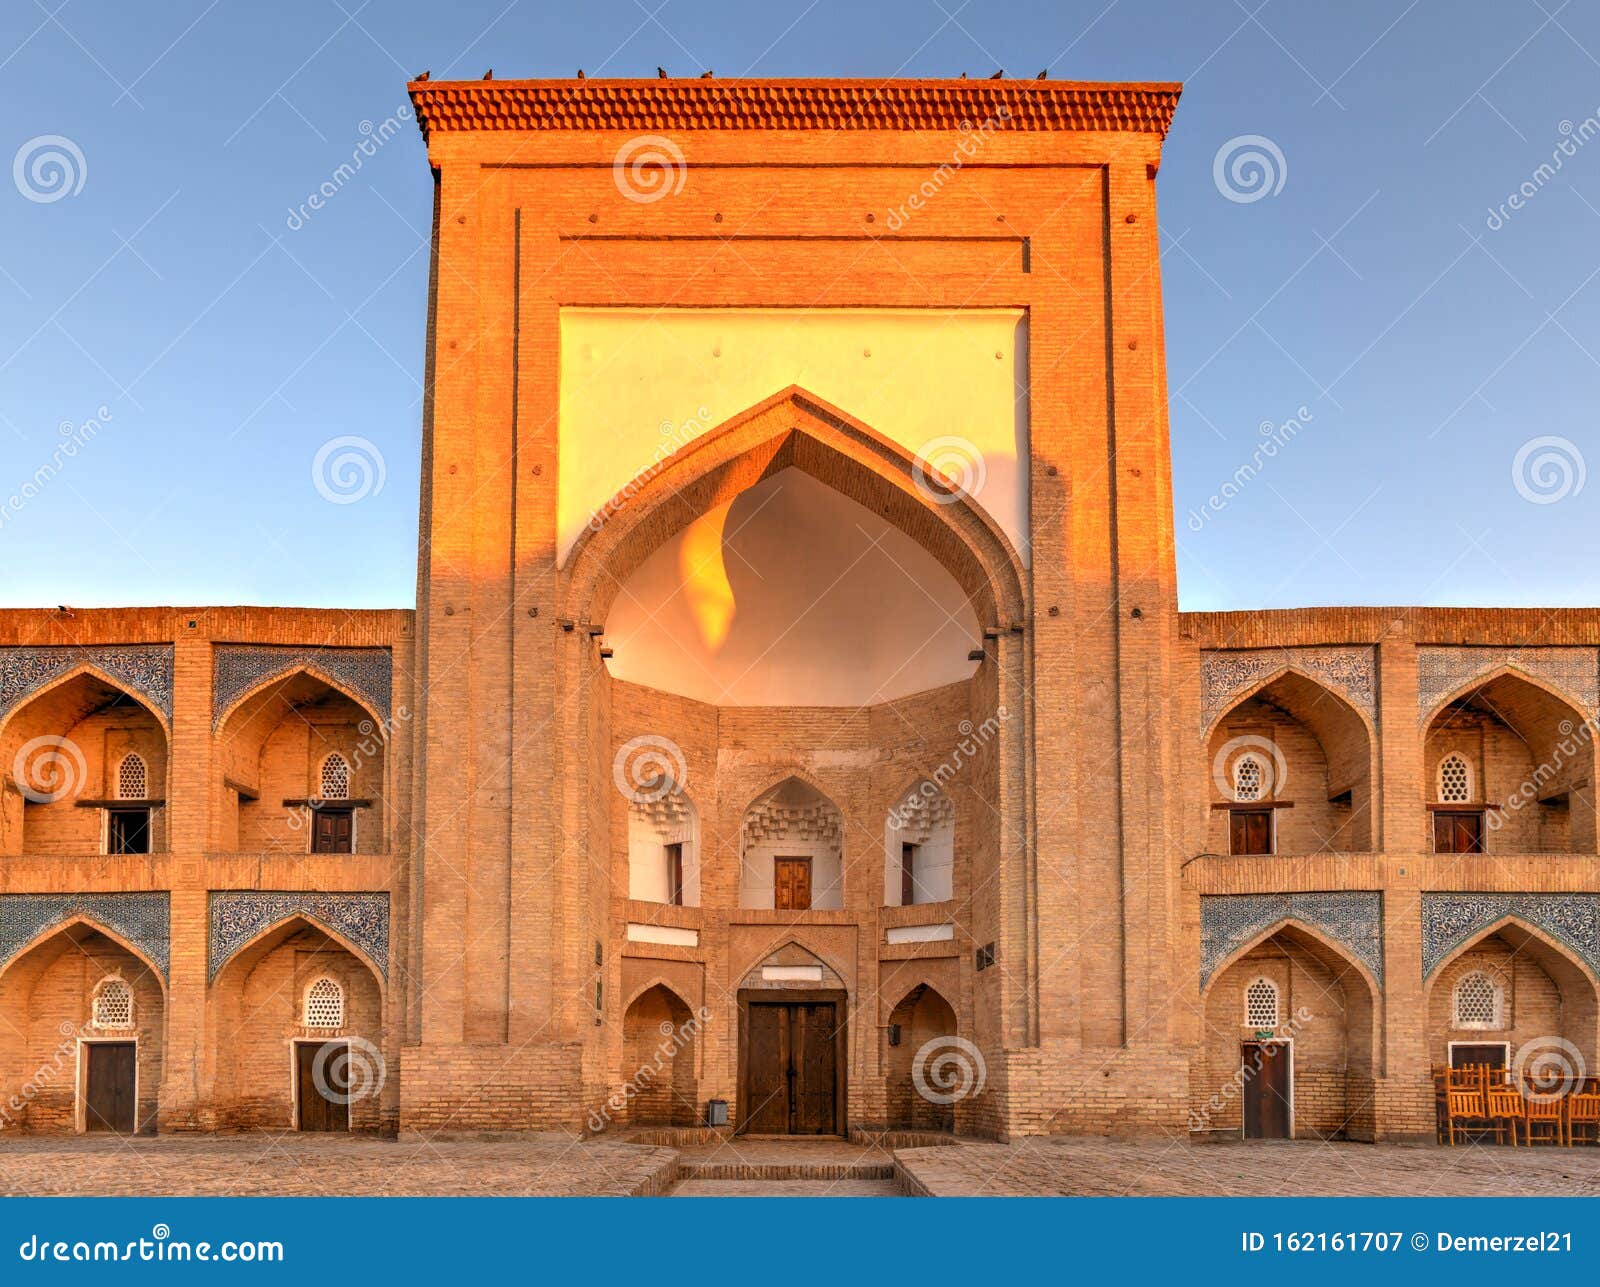 kutlug-murad inaka madrasa - khiva, uzbekistan